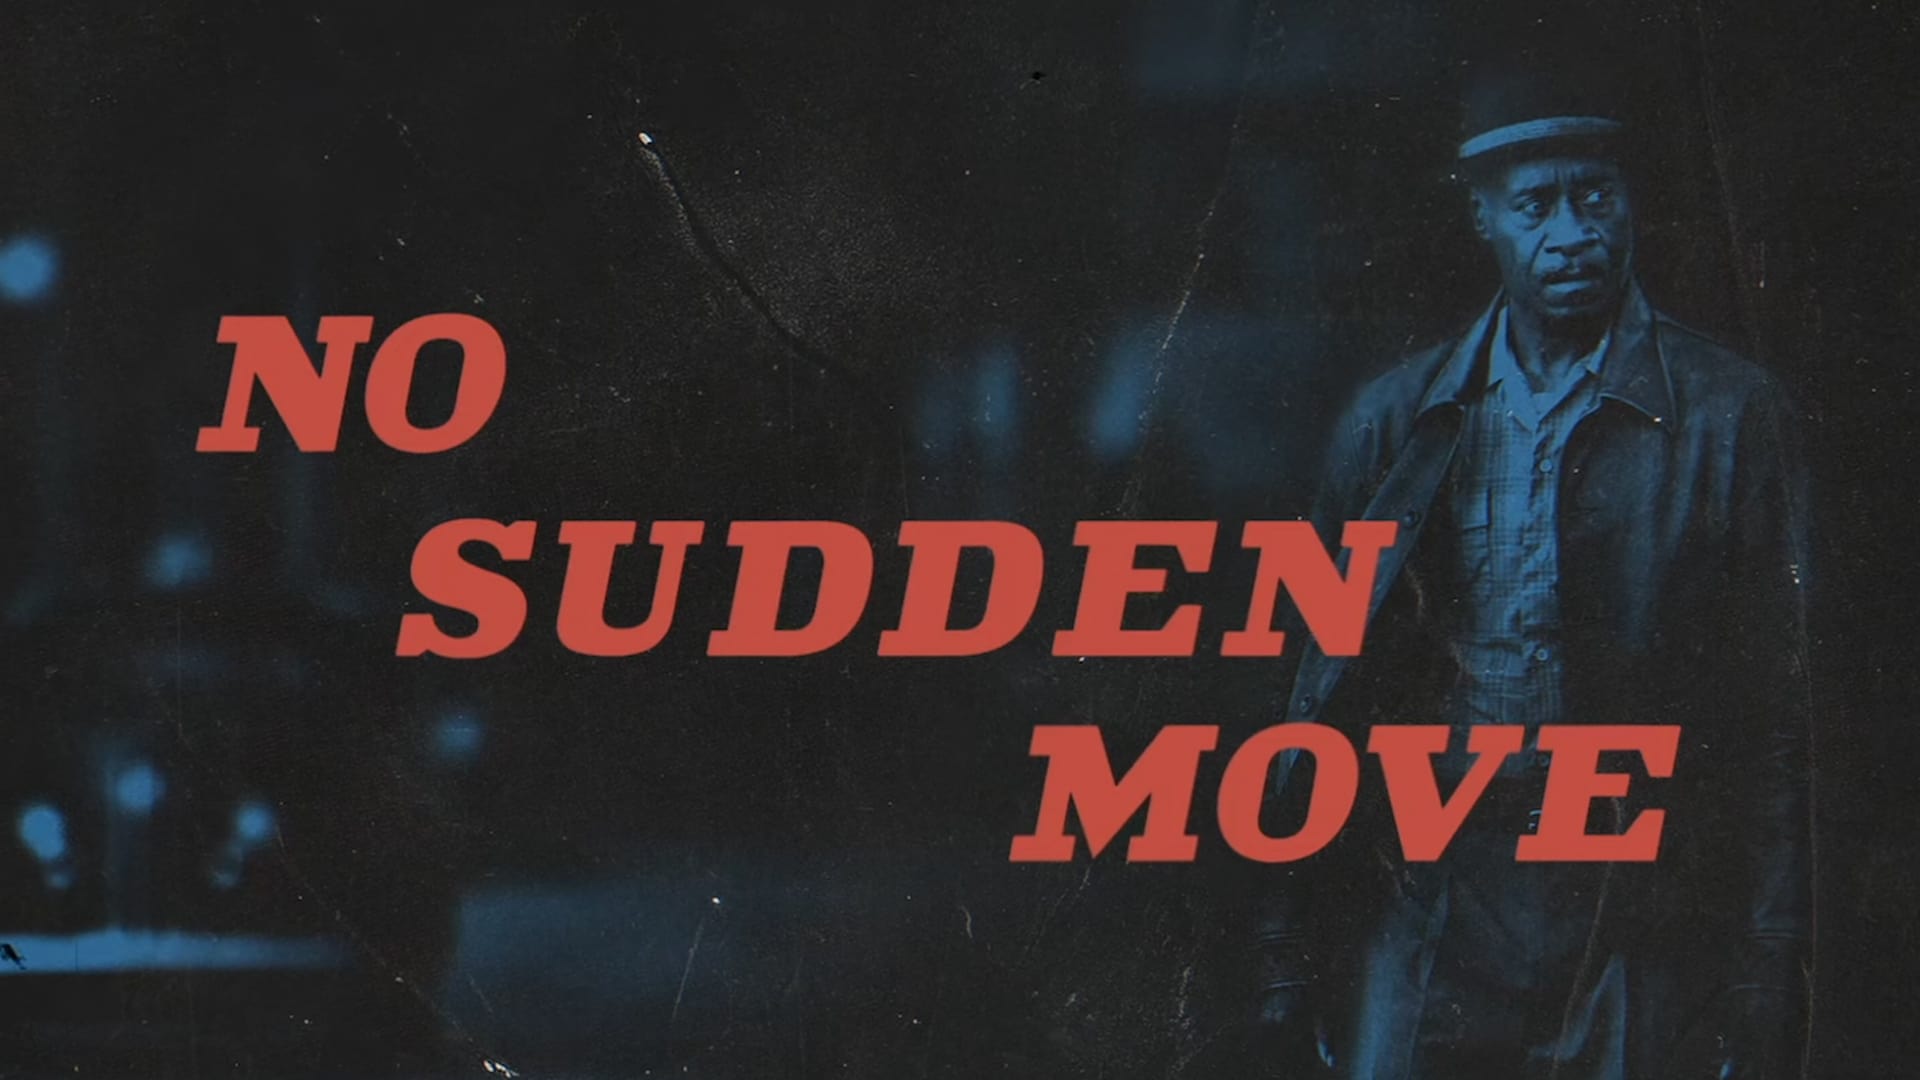 movie, no sudden move